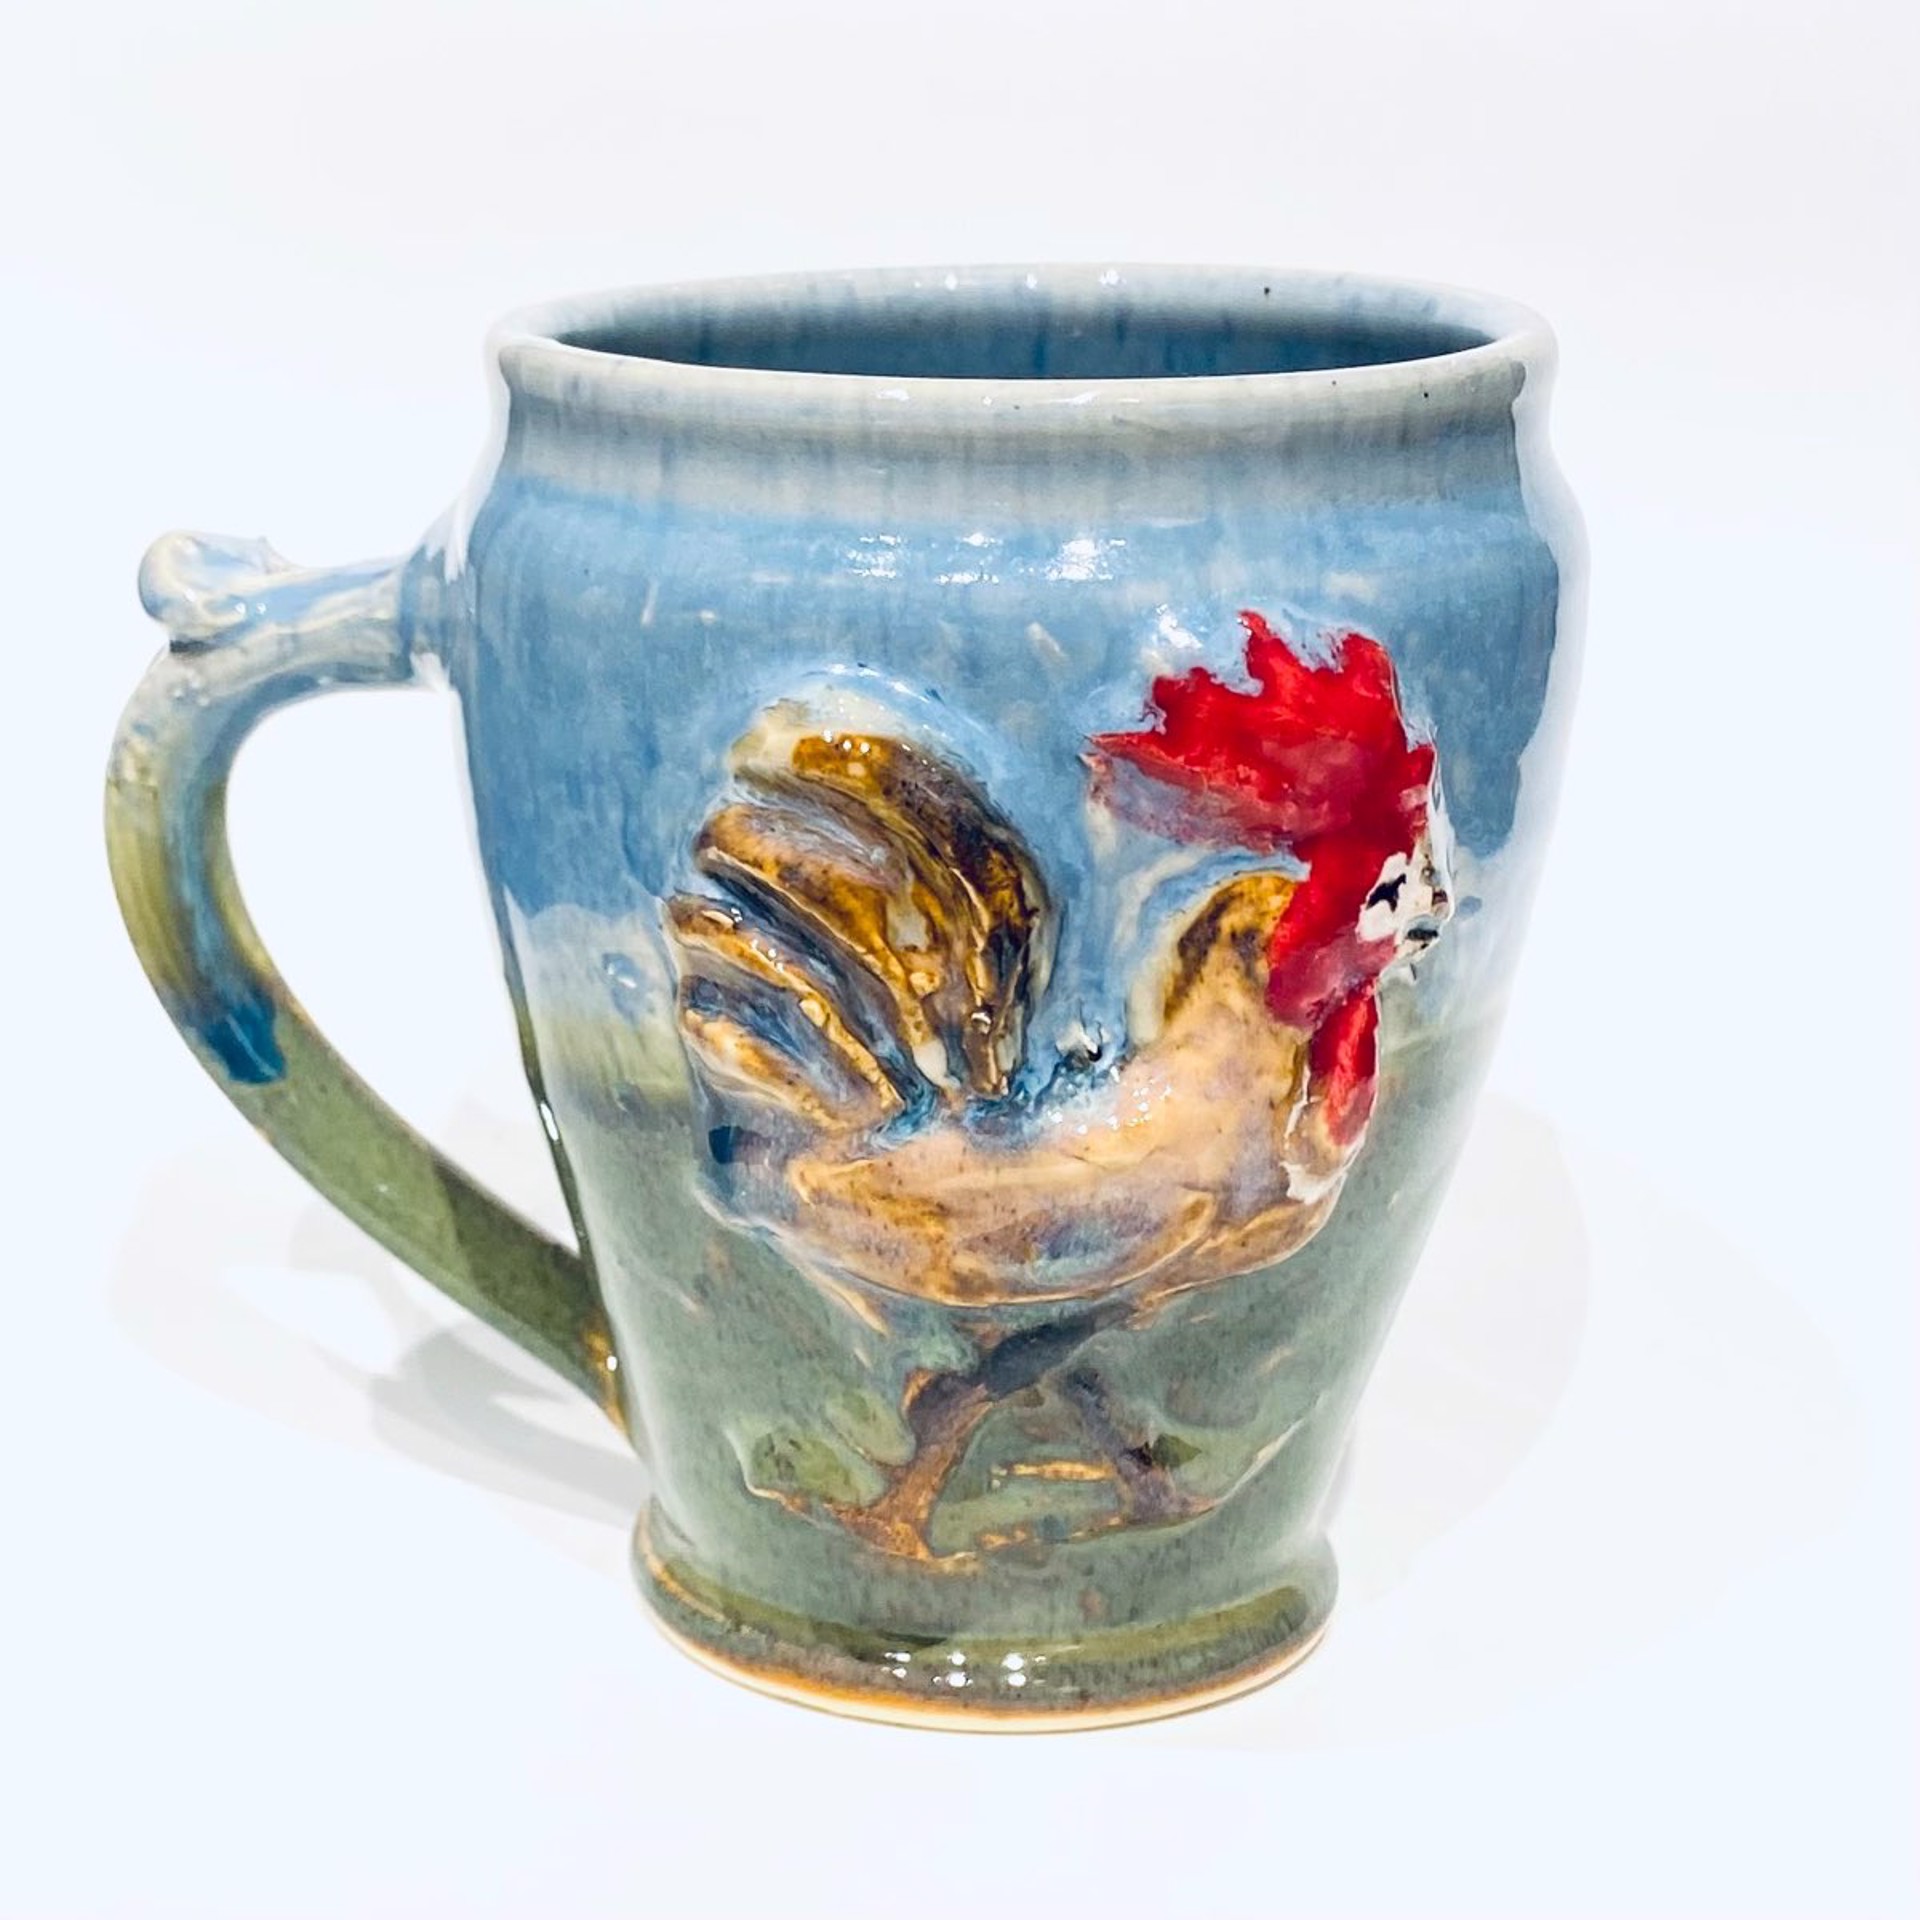 KK22-45 Rooster Mug by Kate Krause